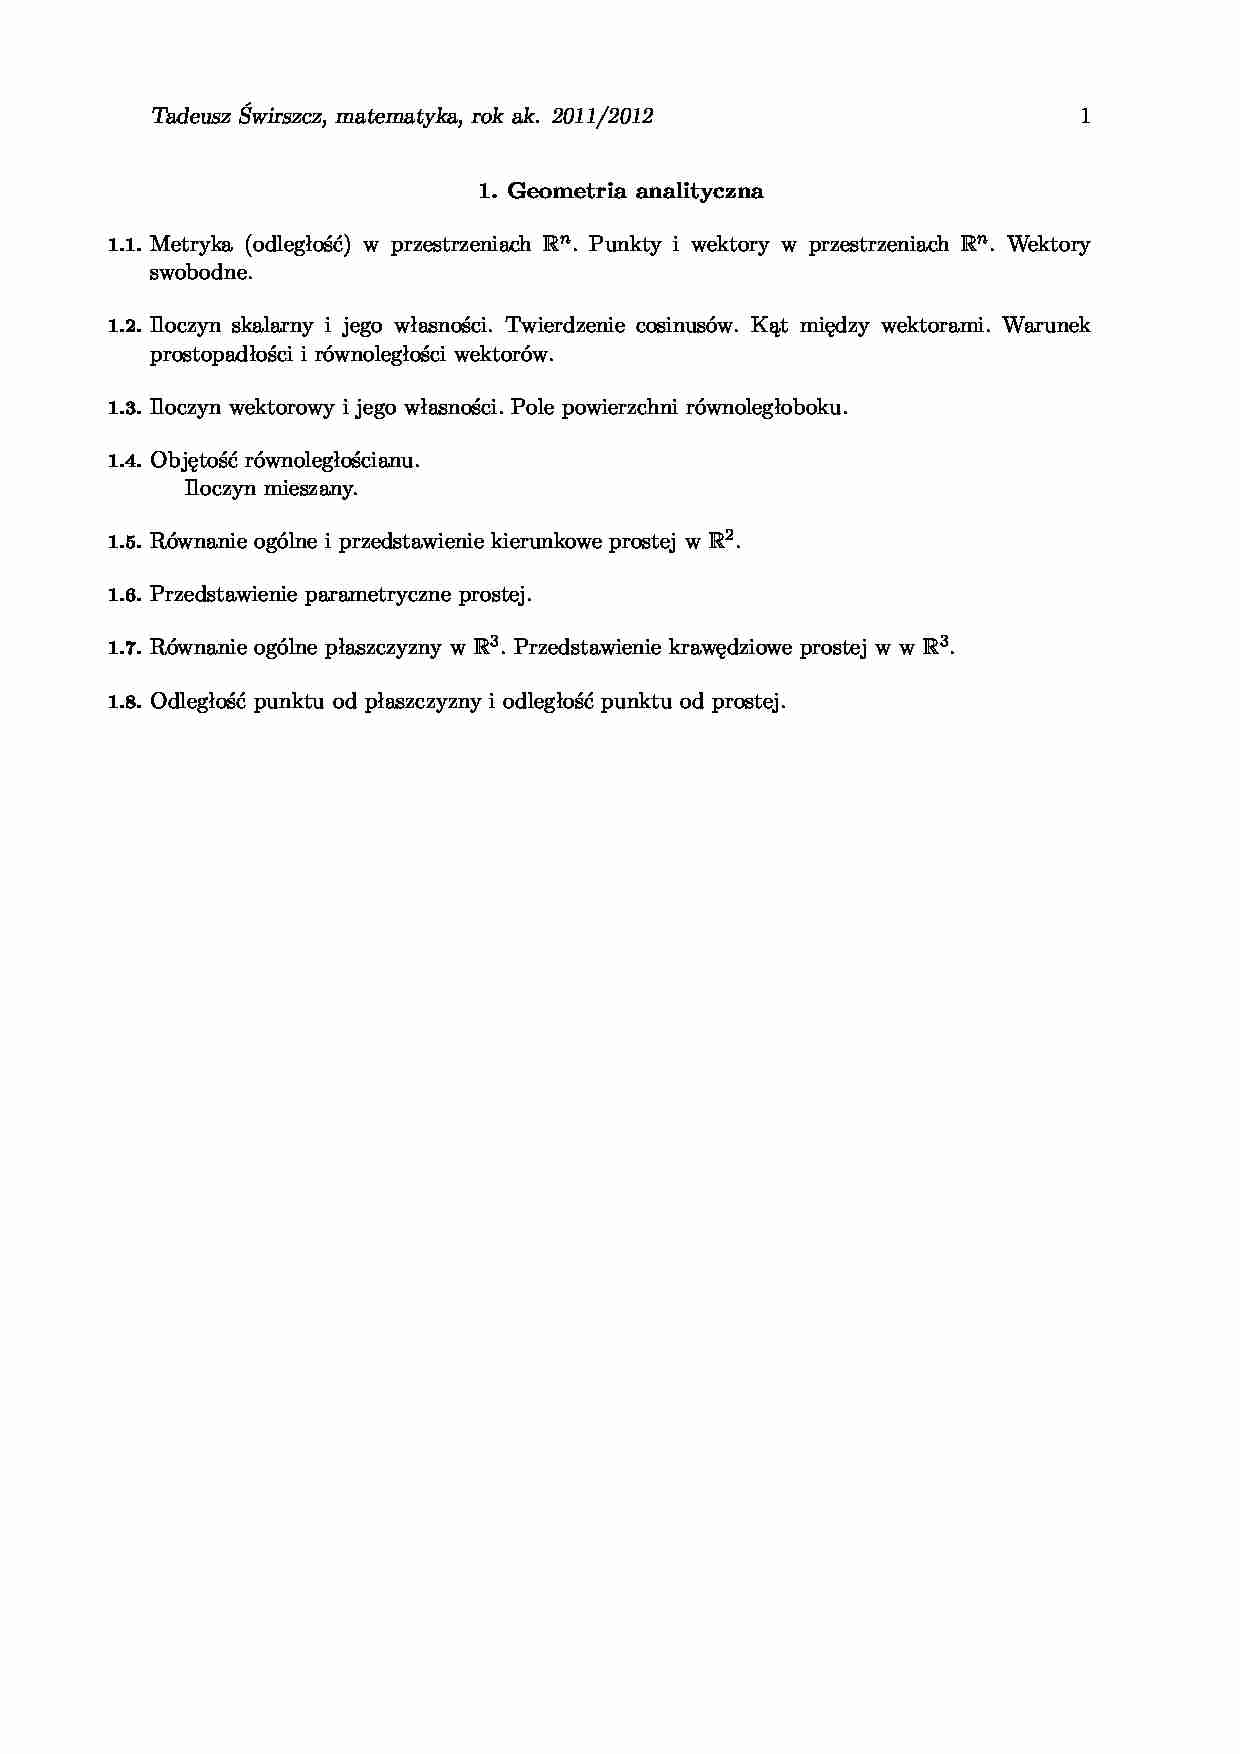 Geometria analityczna - zadania - Równanie ogólne - strona 1